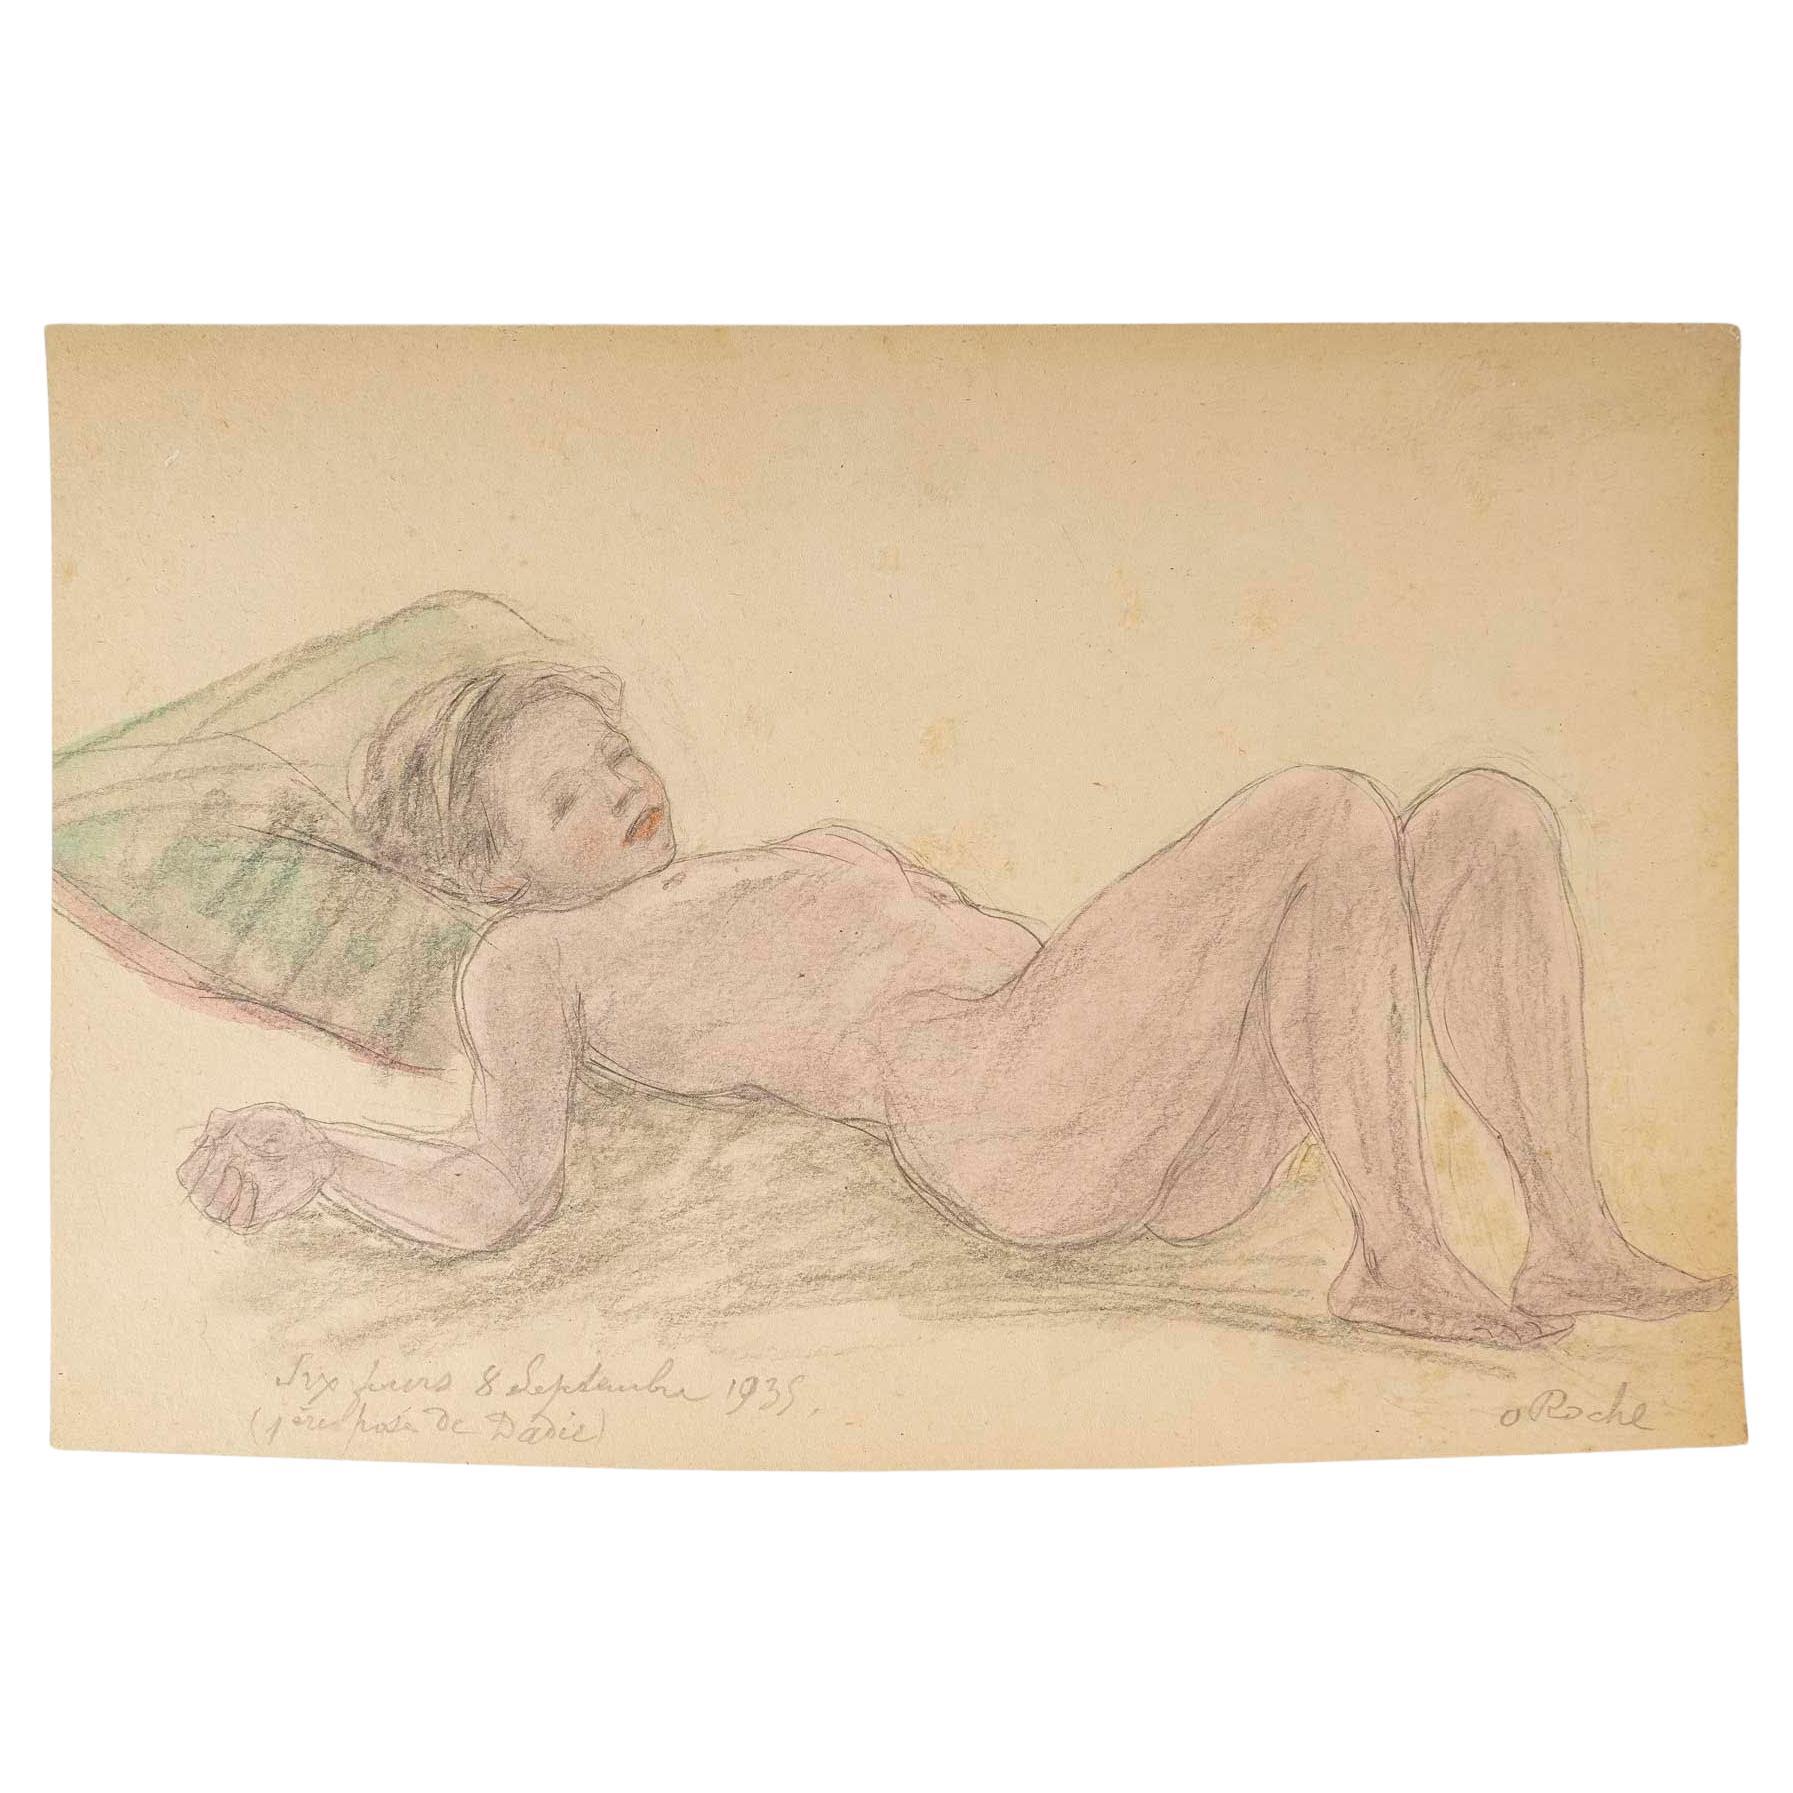 Zeichnung auf Papier, liegende nackte Frau, signiert Odilon Roche.